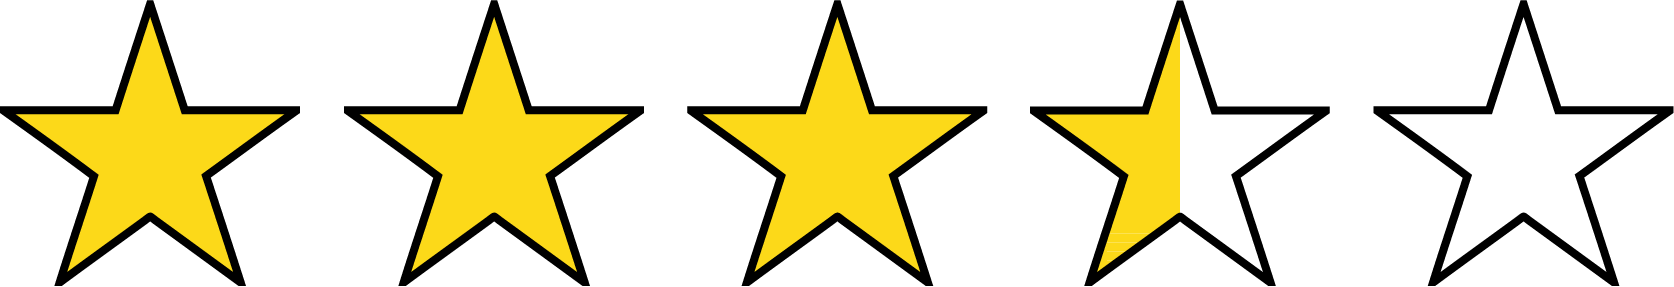 estrella-45